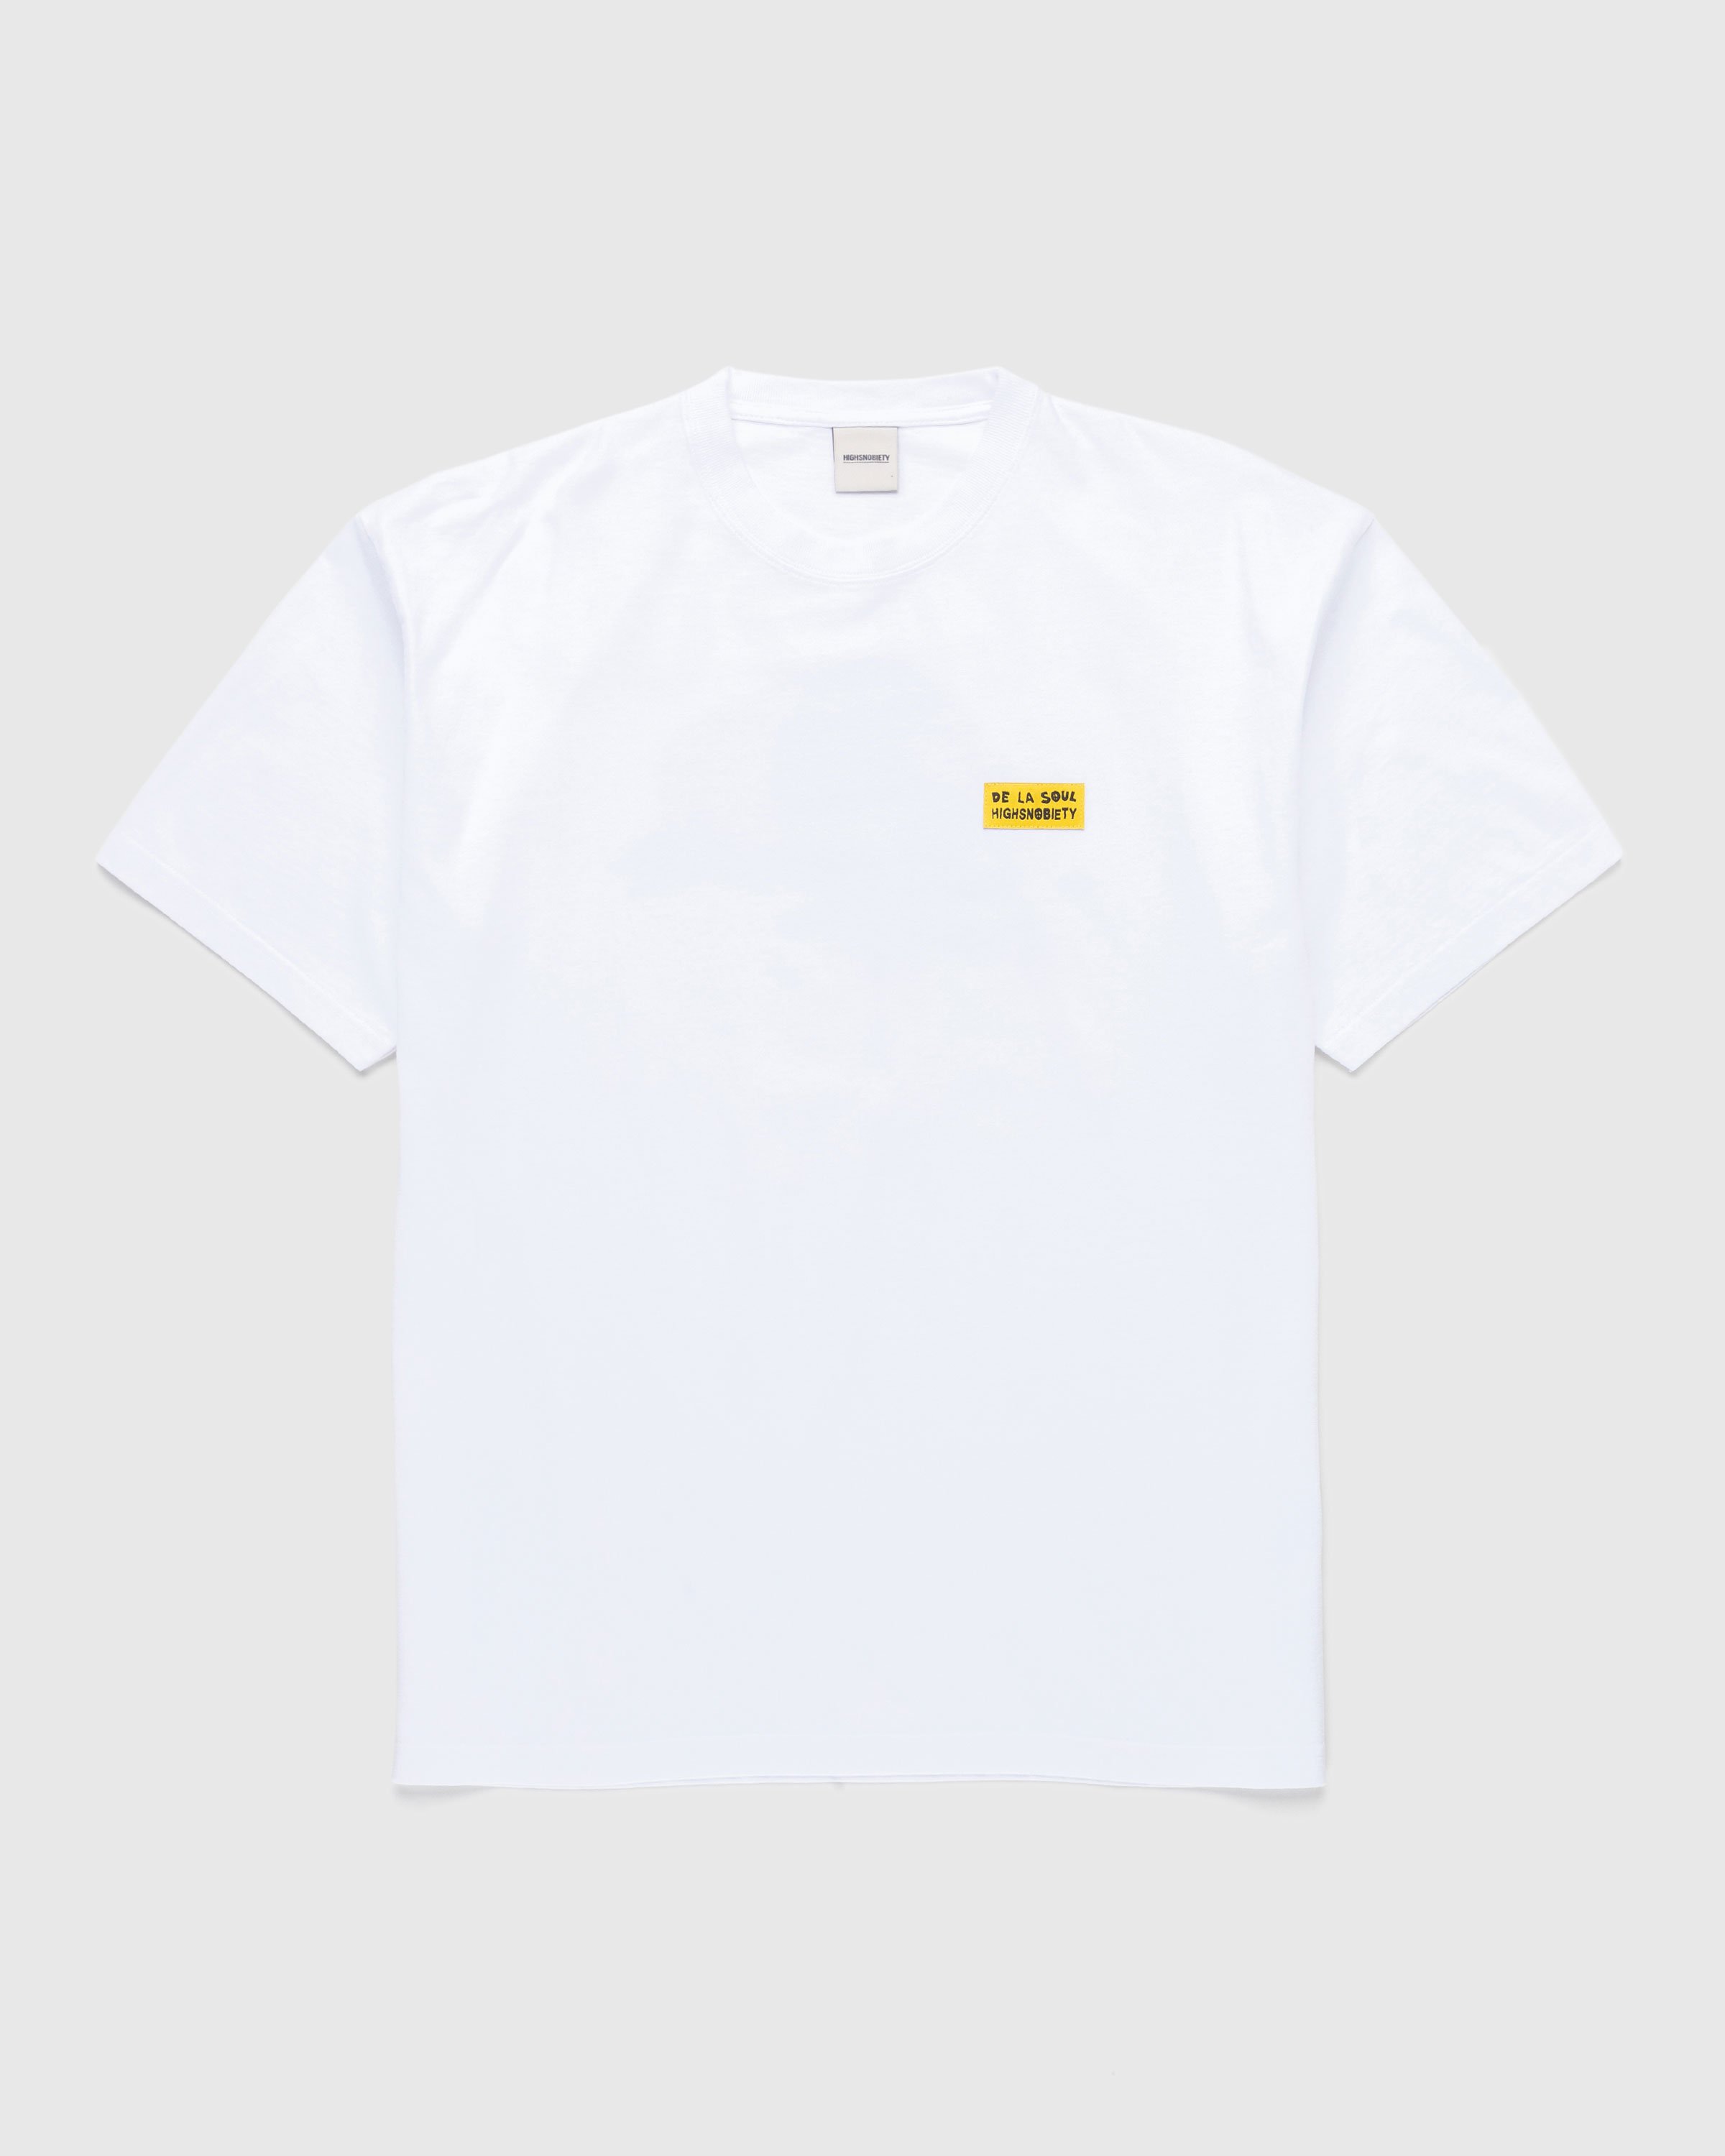 Highsnobiety x De La Soul – T-Shirt White | Highsnobiety Shop